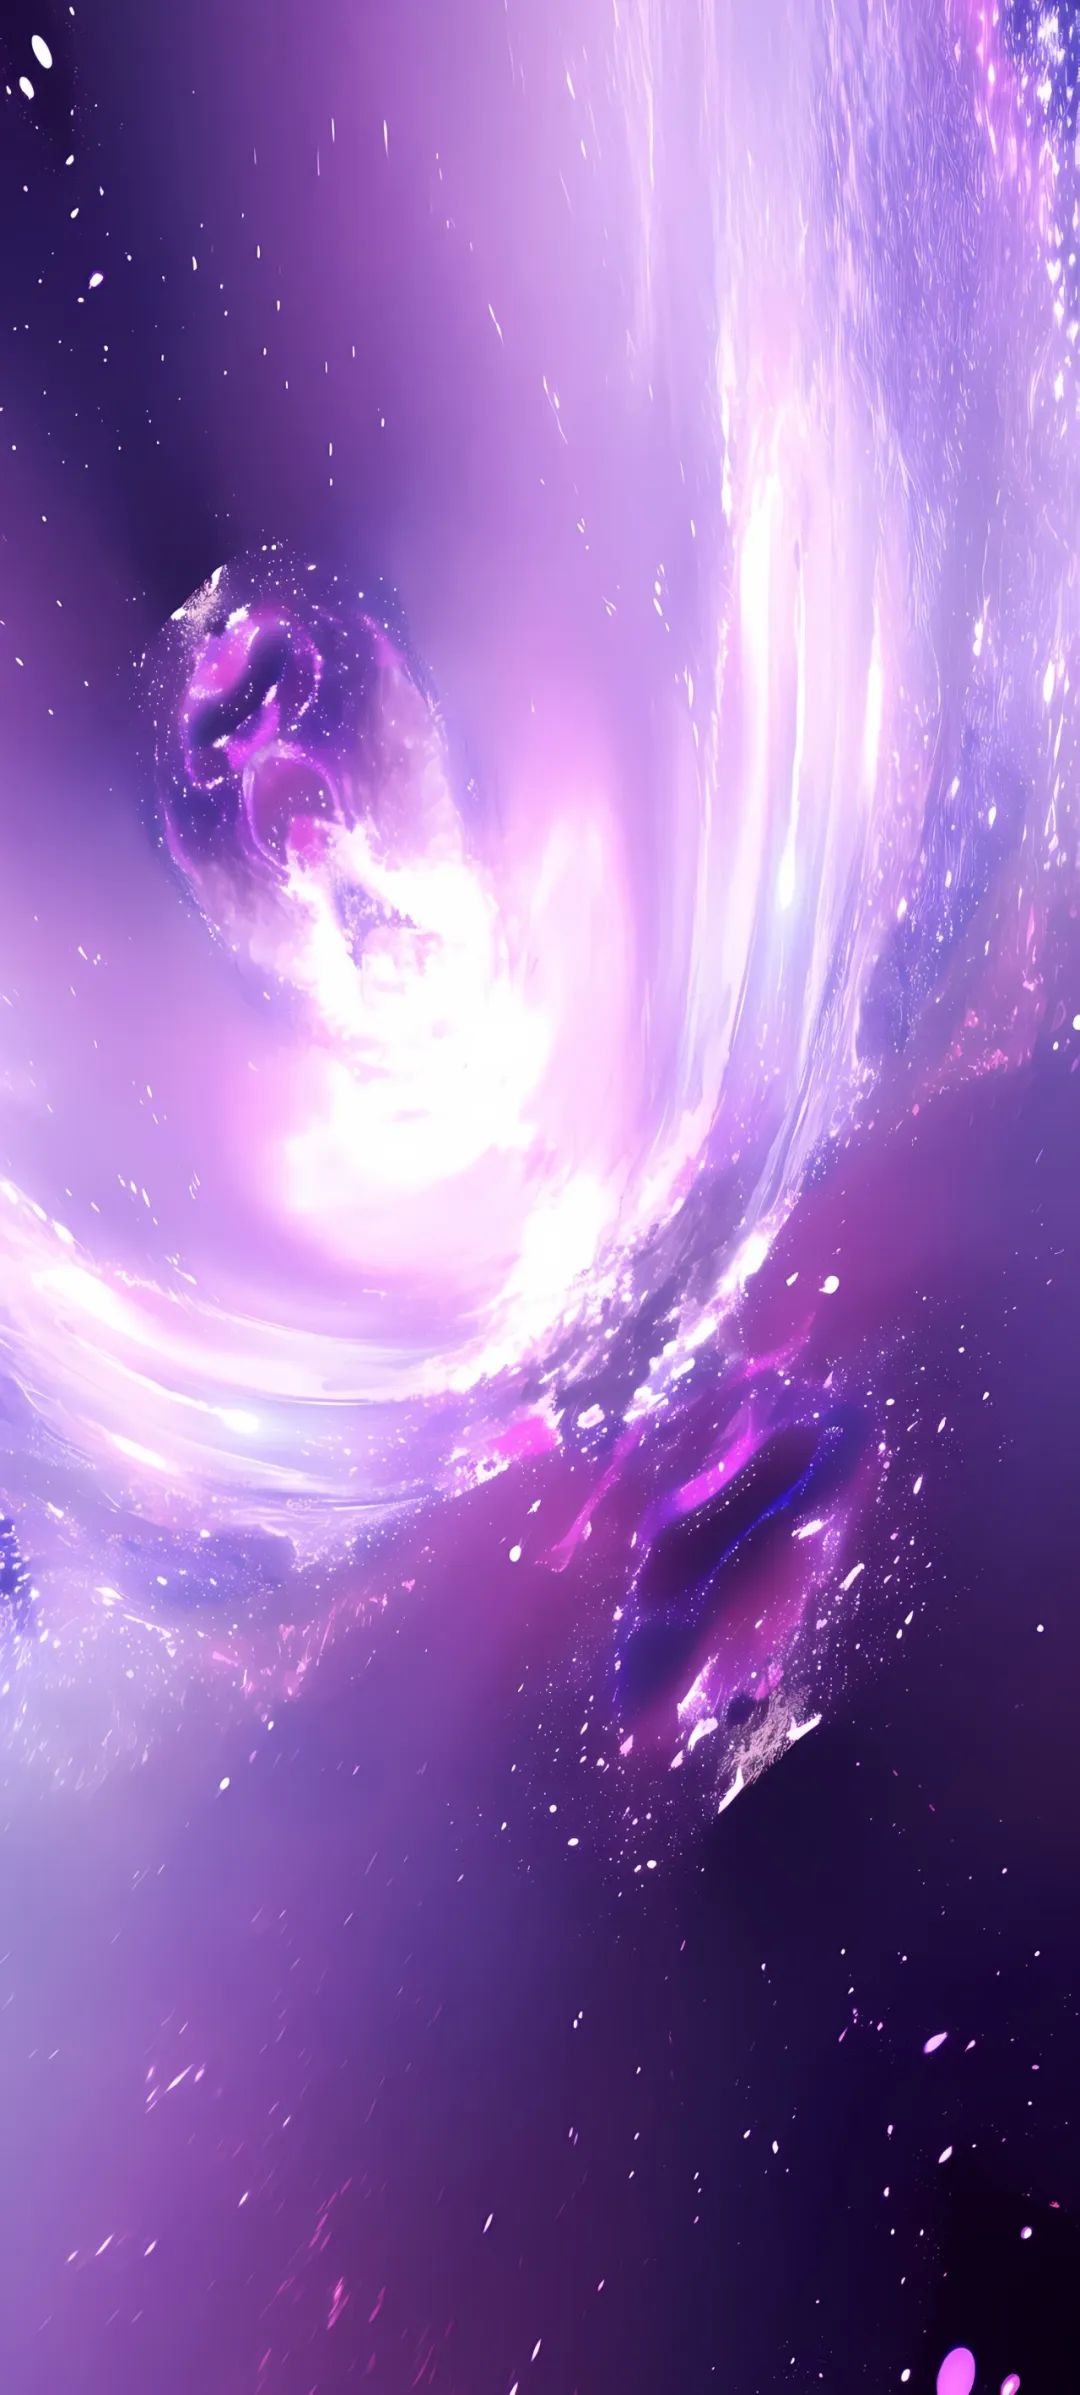 紫色系可爱壁纸 仙女图片